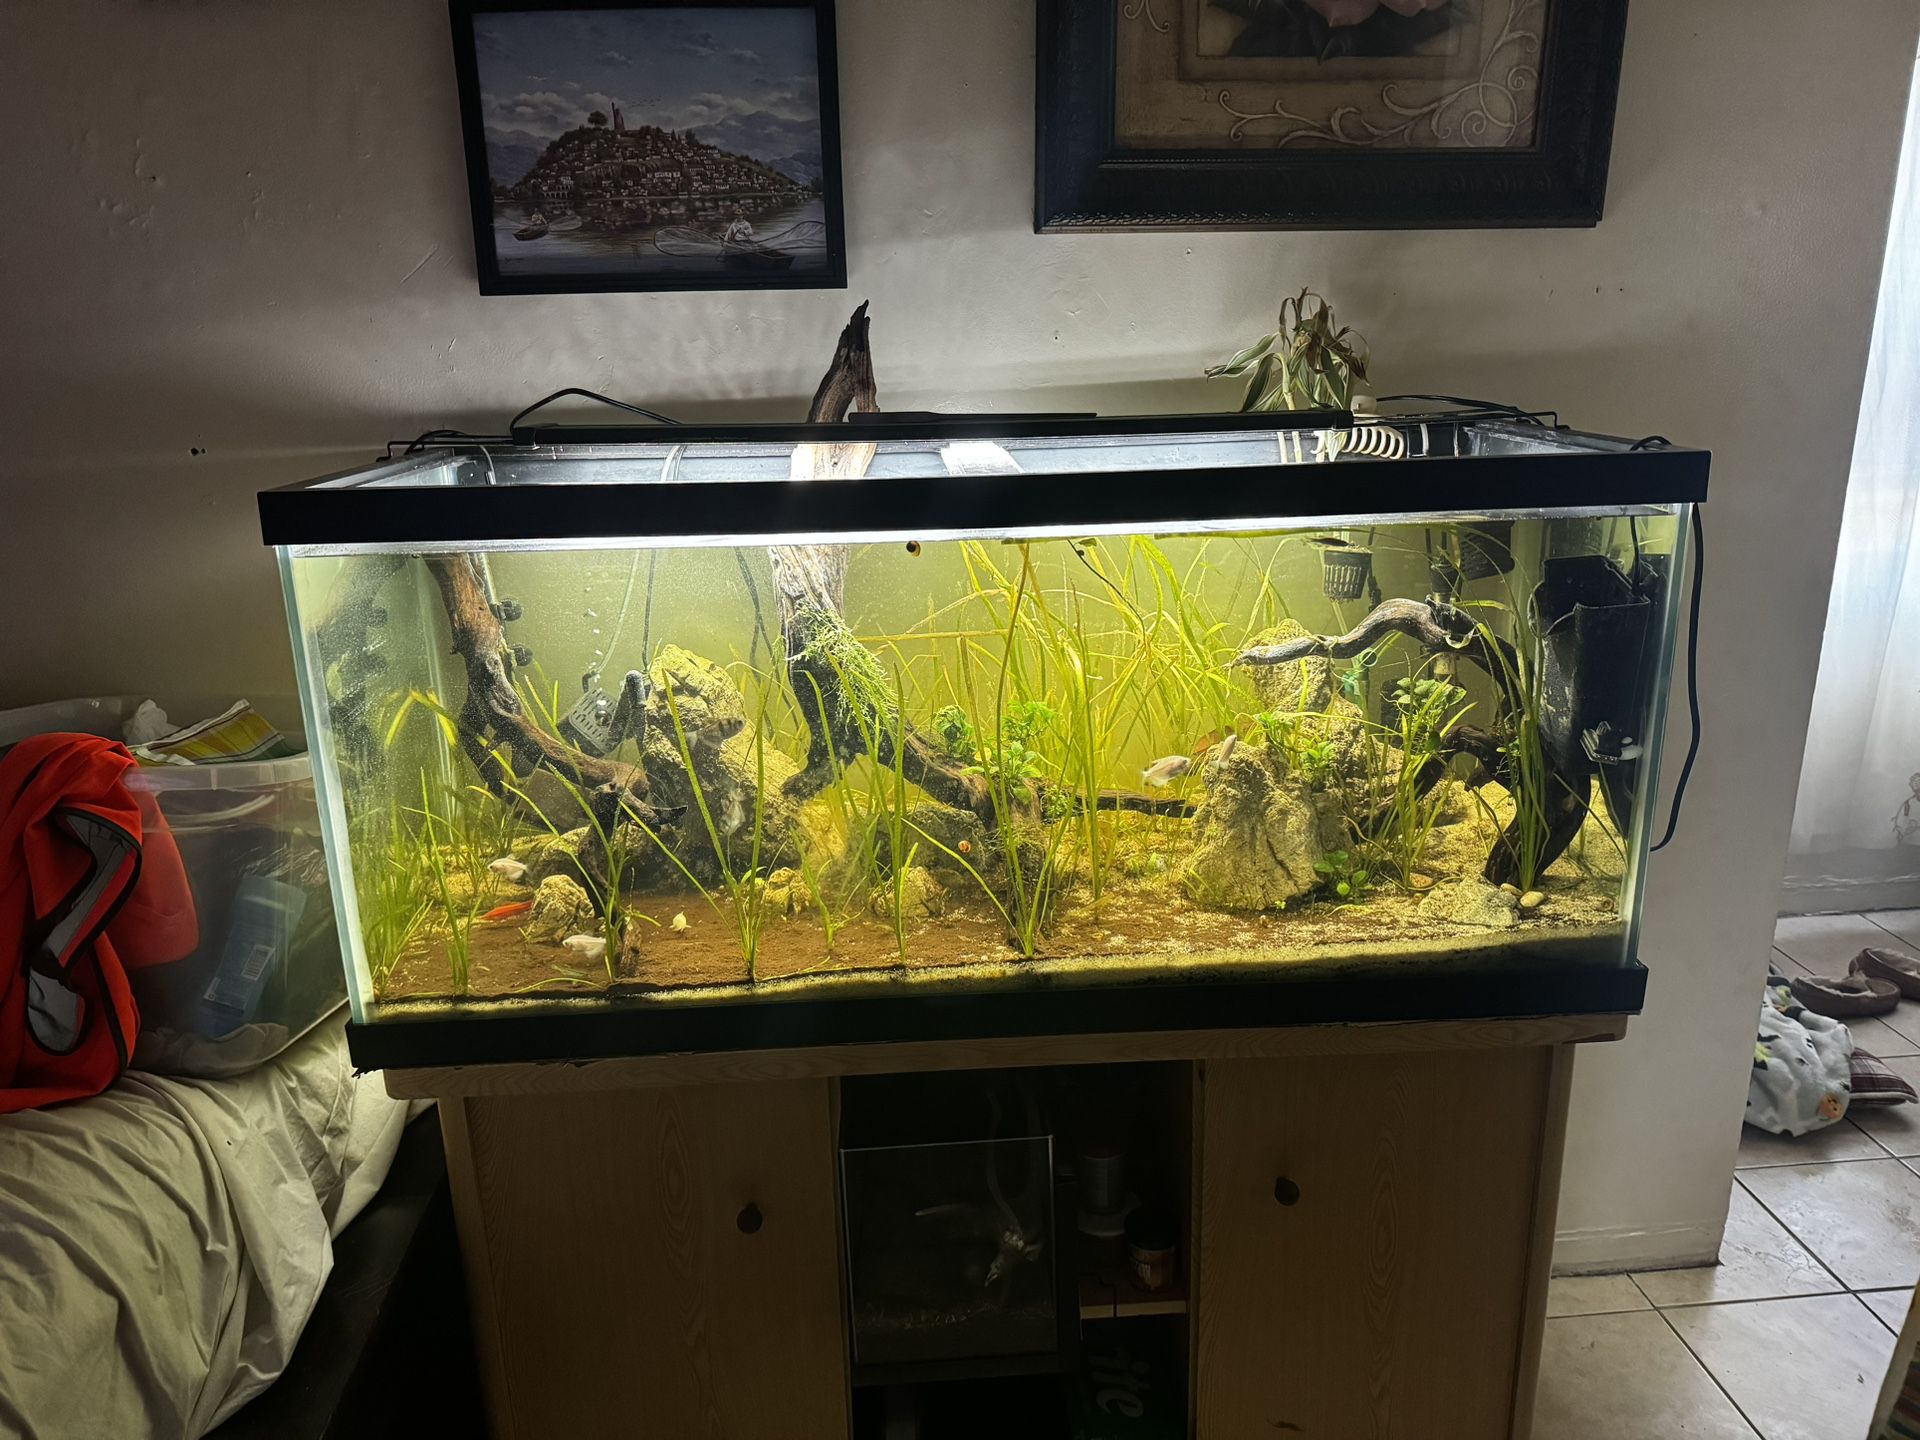 75 Gallon Fish Tank Aquarium Stand 